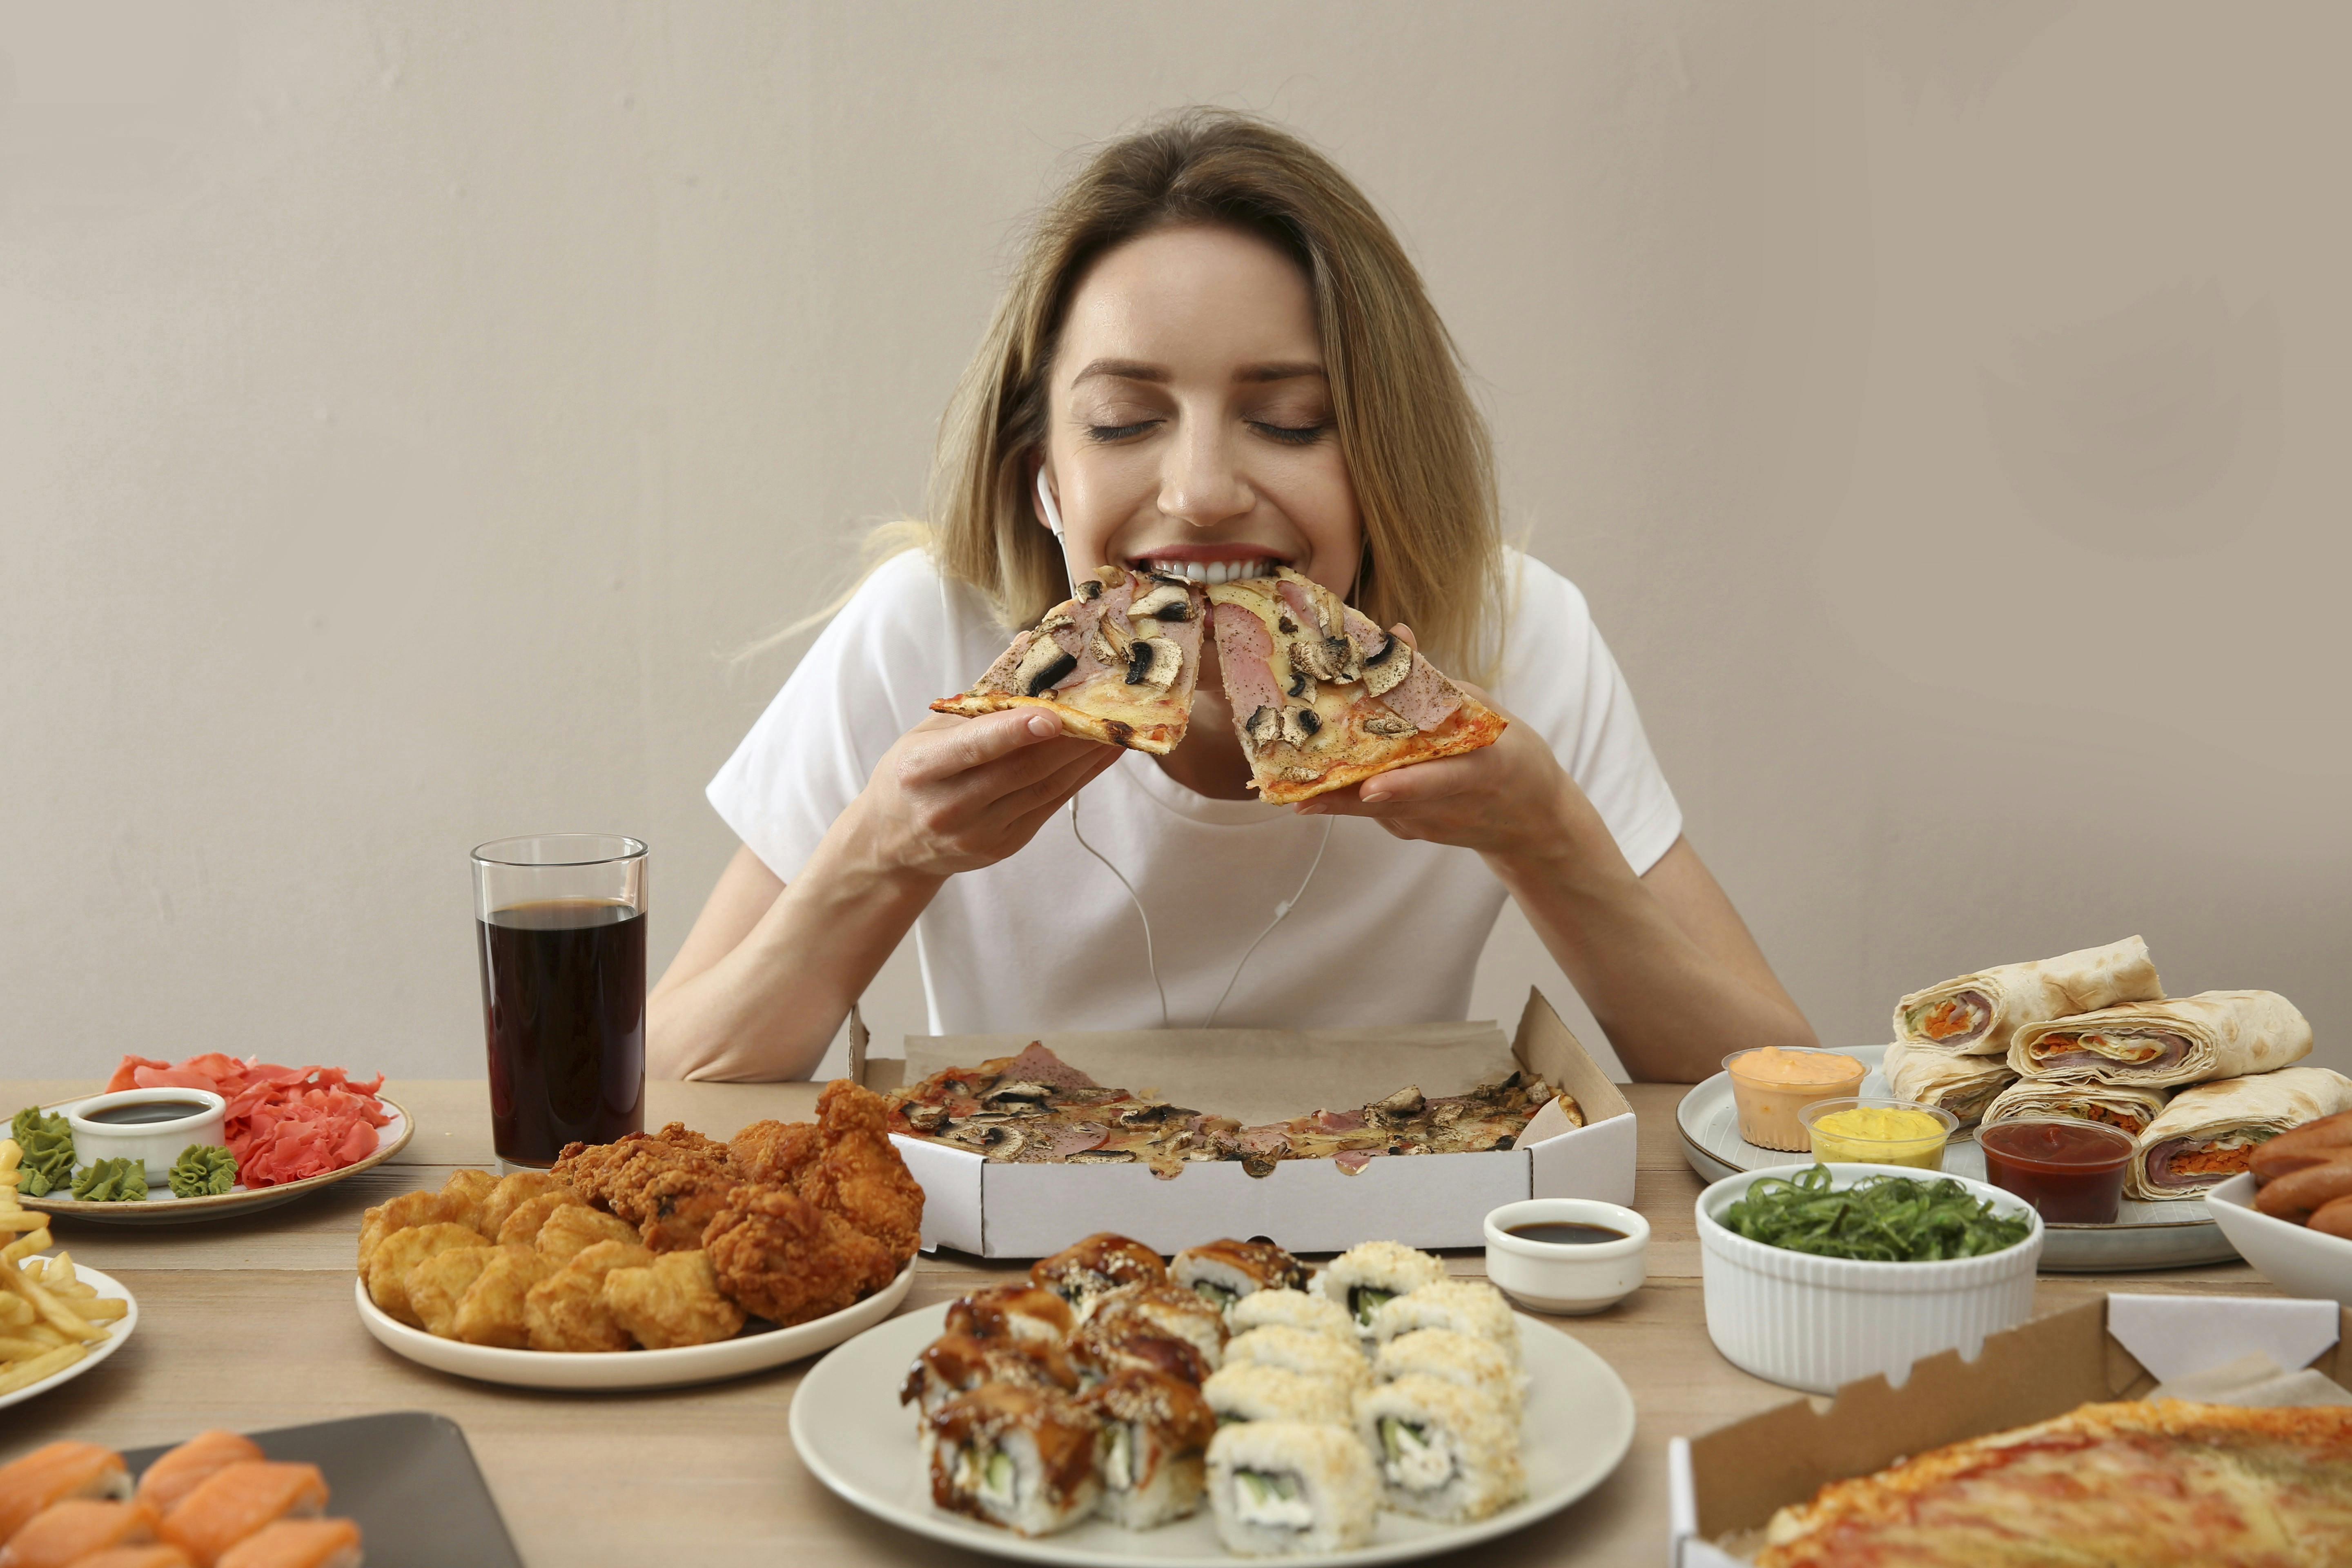 Et bord fyldt med mad, som en kvinde spiser